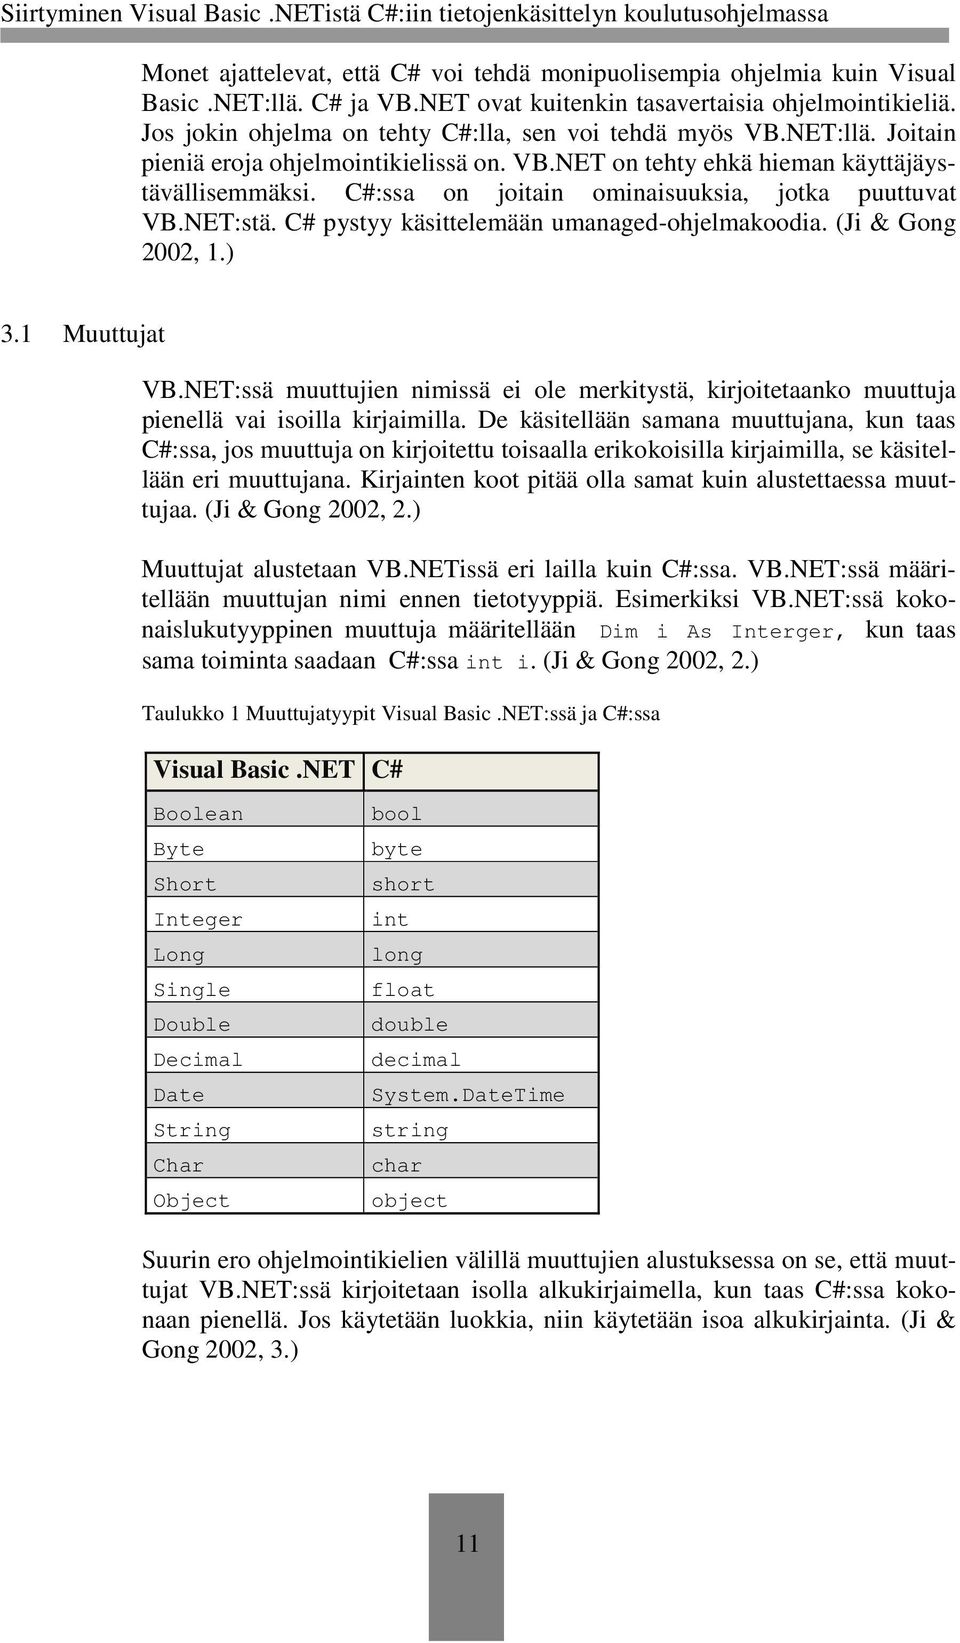 C#:ssa on joitain ominaisuuksia, jotka puuttuvat VB.NET:stä. C# pystyy käsittelemään umanaged-ohjelmakoodia. (Ji & Gong 2002, 1.) 3.1 Muuttujat VB.